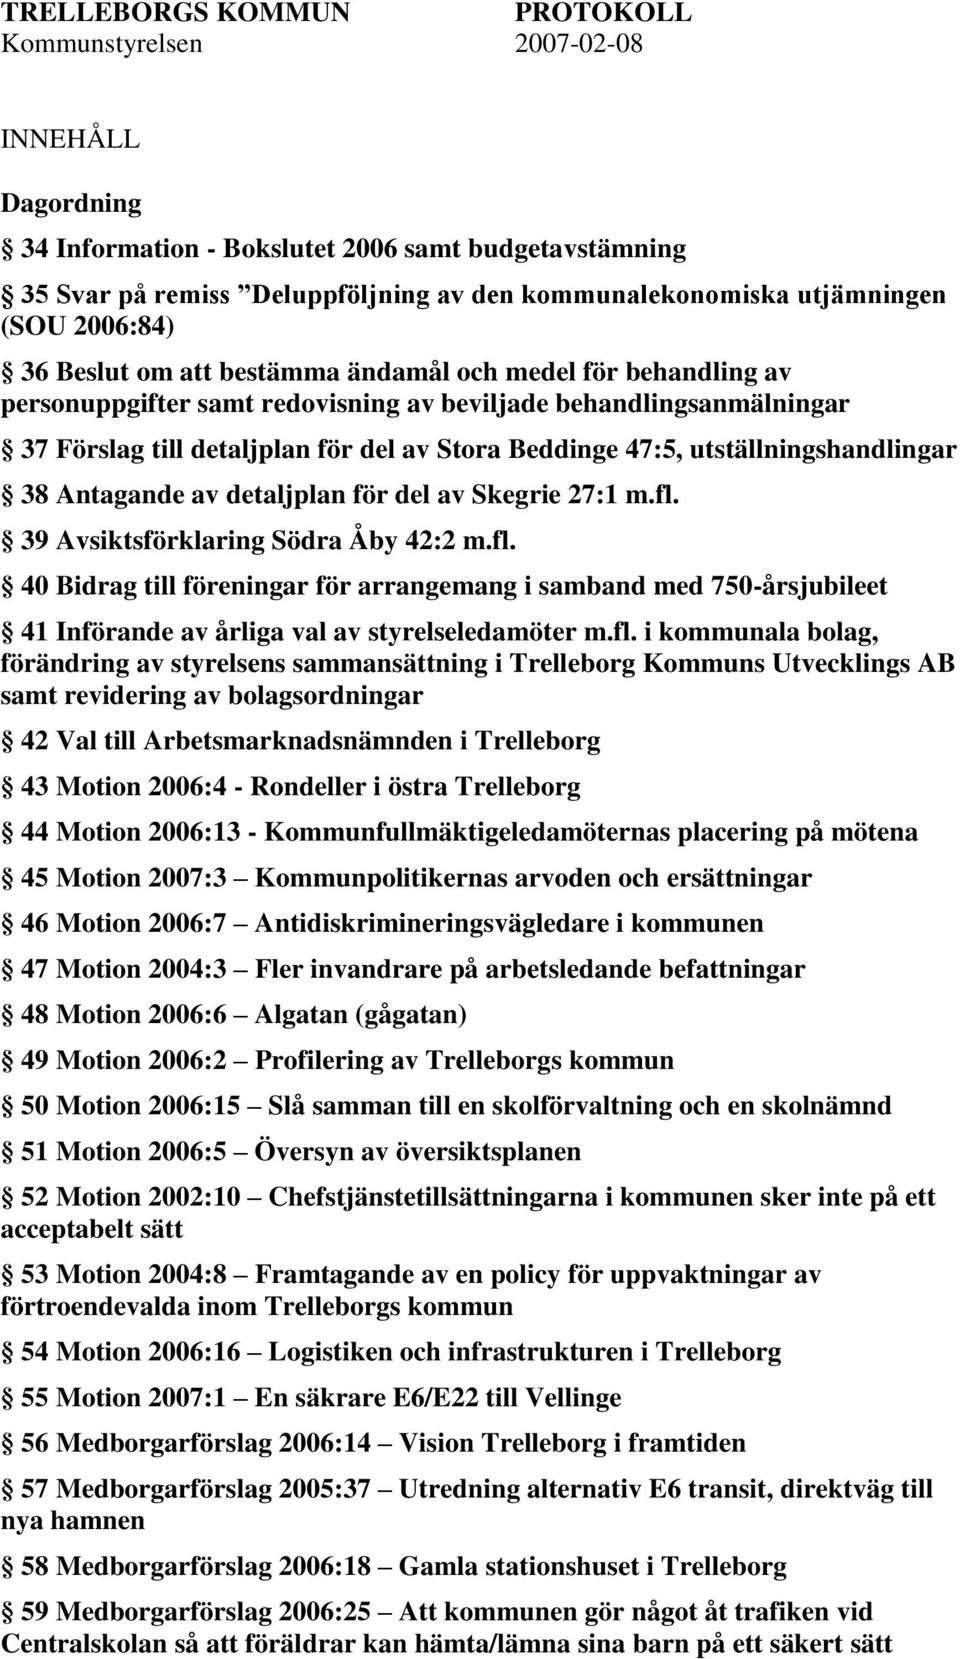 Antagande av detaljplan för del av Skegrie 27:1 m.fl. 39 Avsiktsförklaring Södra Åby 42:2 m.fl. 40 Bidrag till föreningar för arrangemang i samband med 750-årsjubileet 41 Införande av årliga val av styrelseledamöter m.